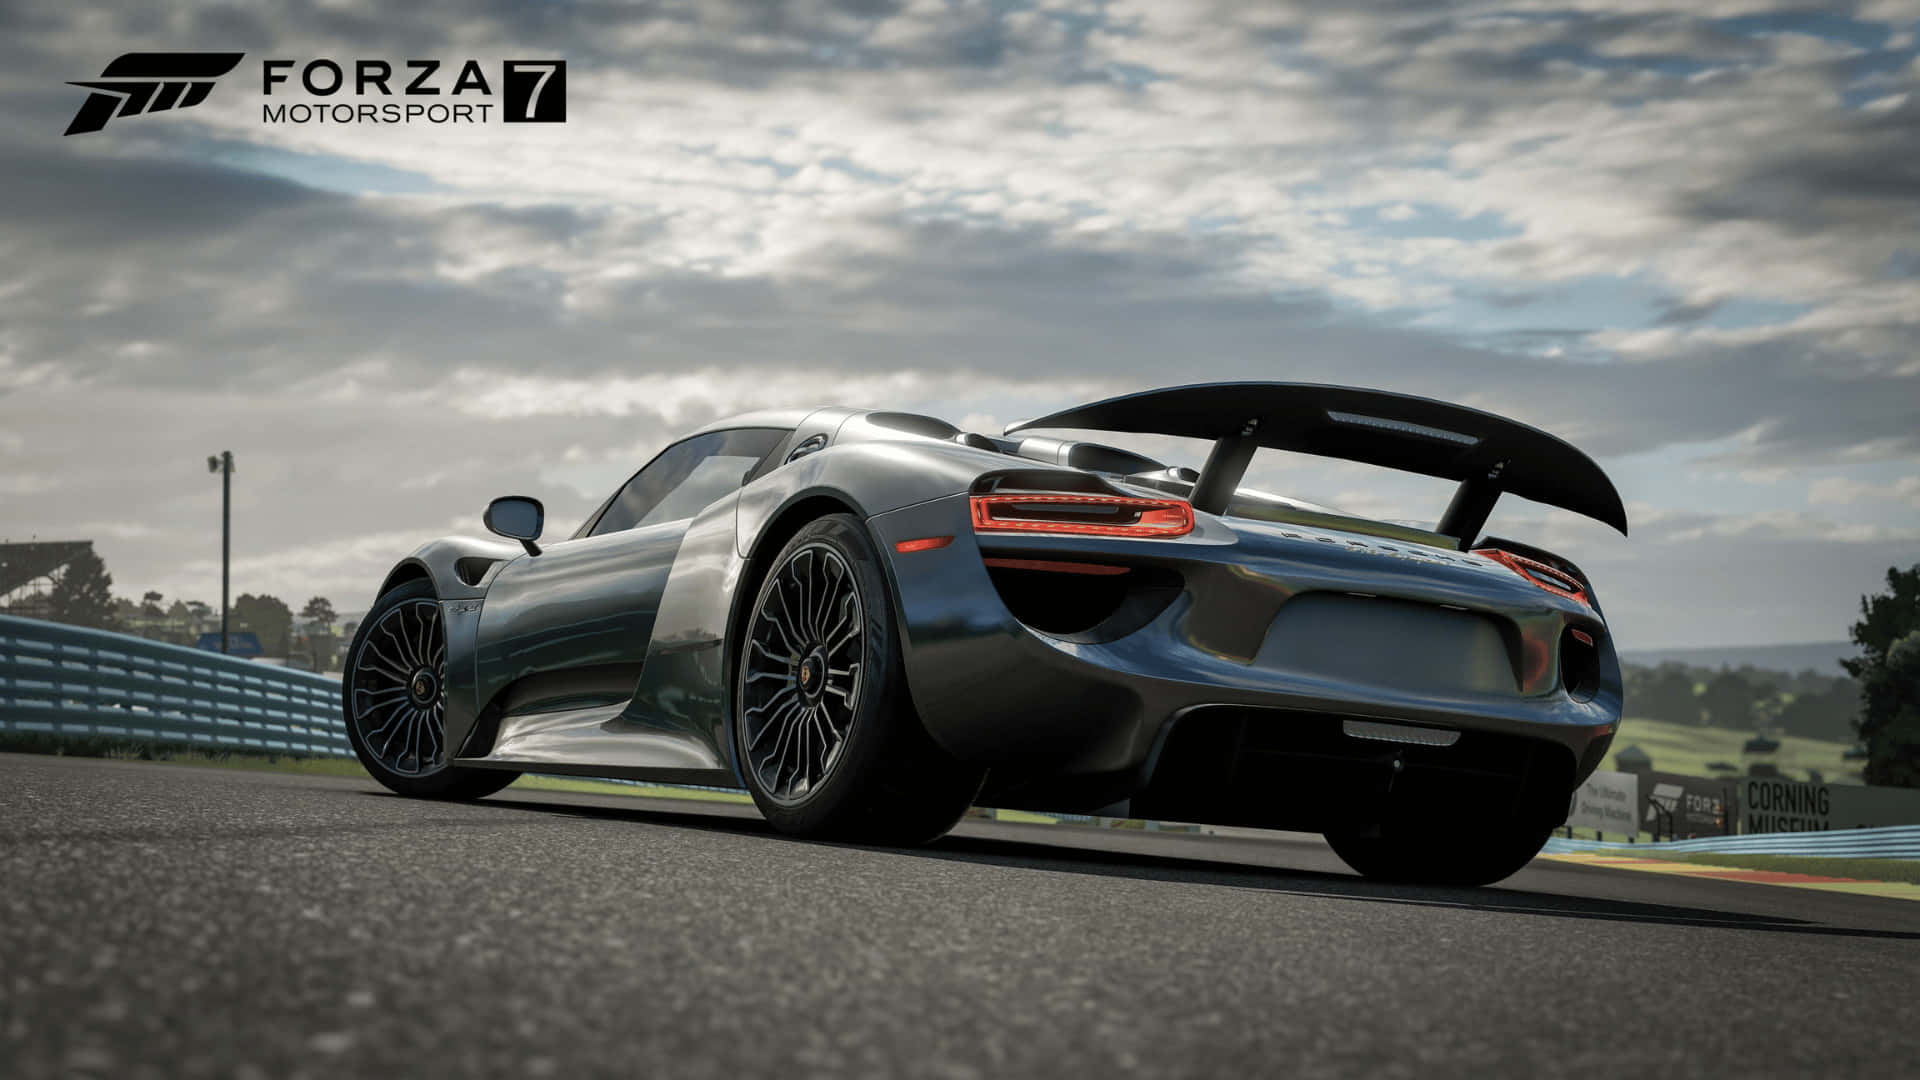 Gareggiaattraverso Le Piste Più Iconiche Del Mondo Con Forza Motorsport 7.